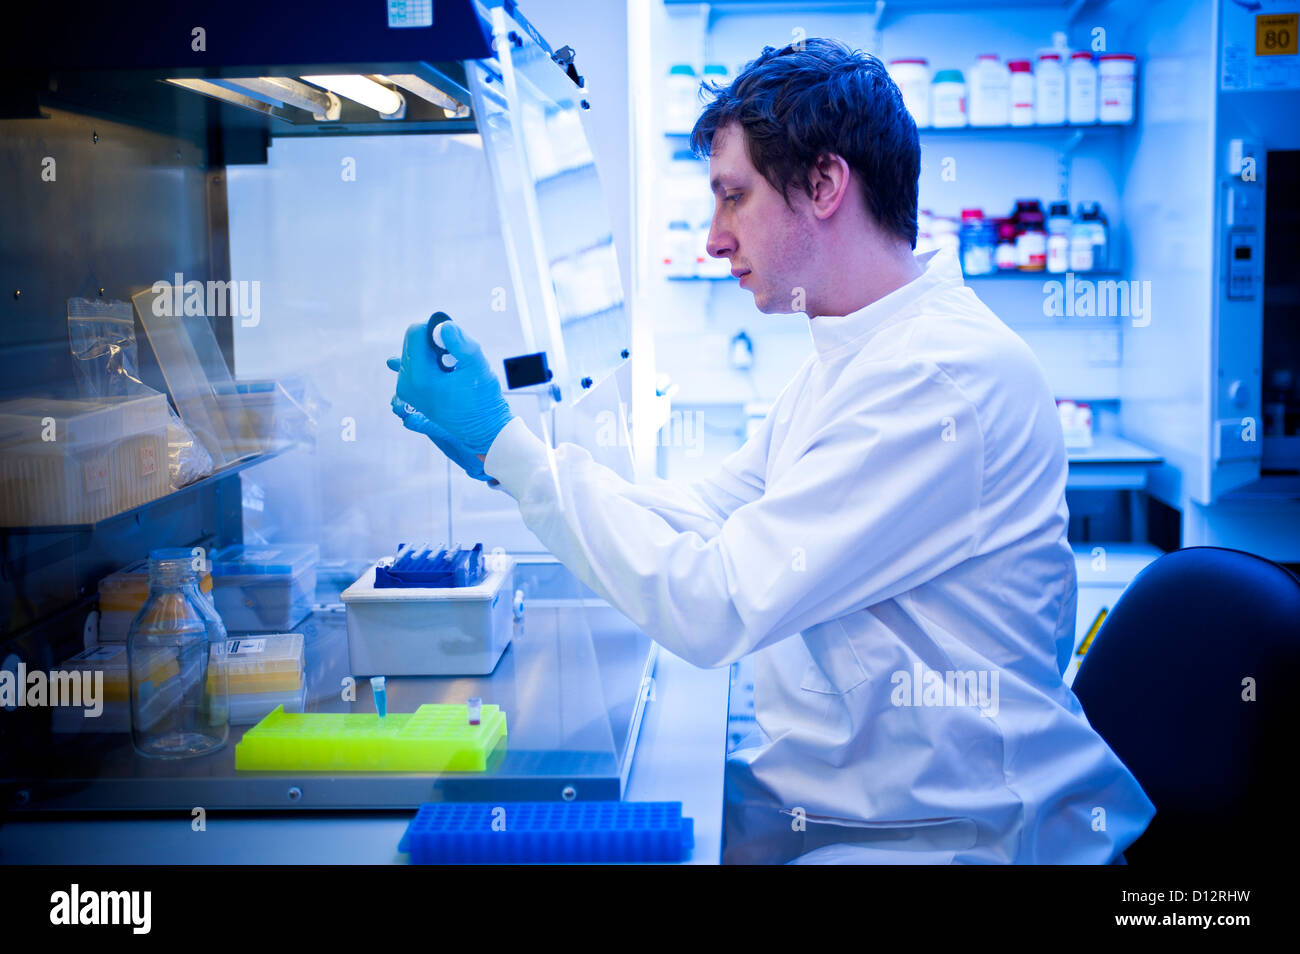 Jeune homme scientifique ou l'âge de la vingtaine de chercheurs travaillant à sat hotte à des échantillons biologiques dans un laboratoire scientifique. Banque D'Images